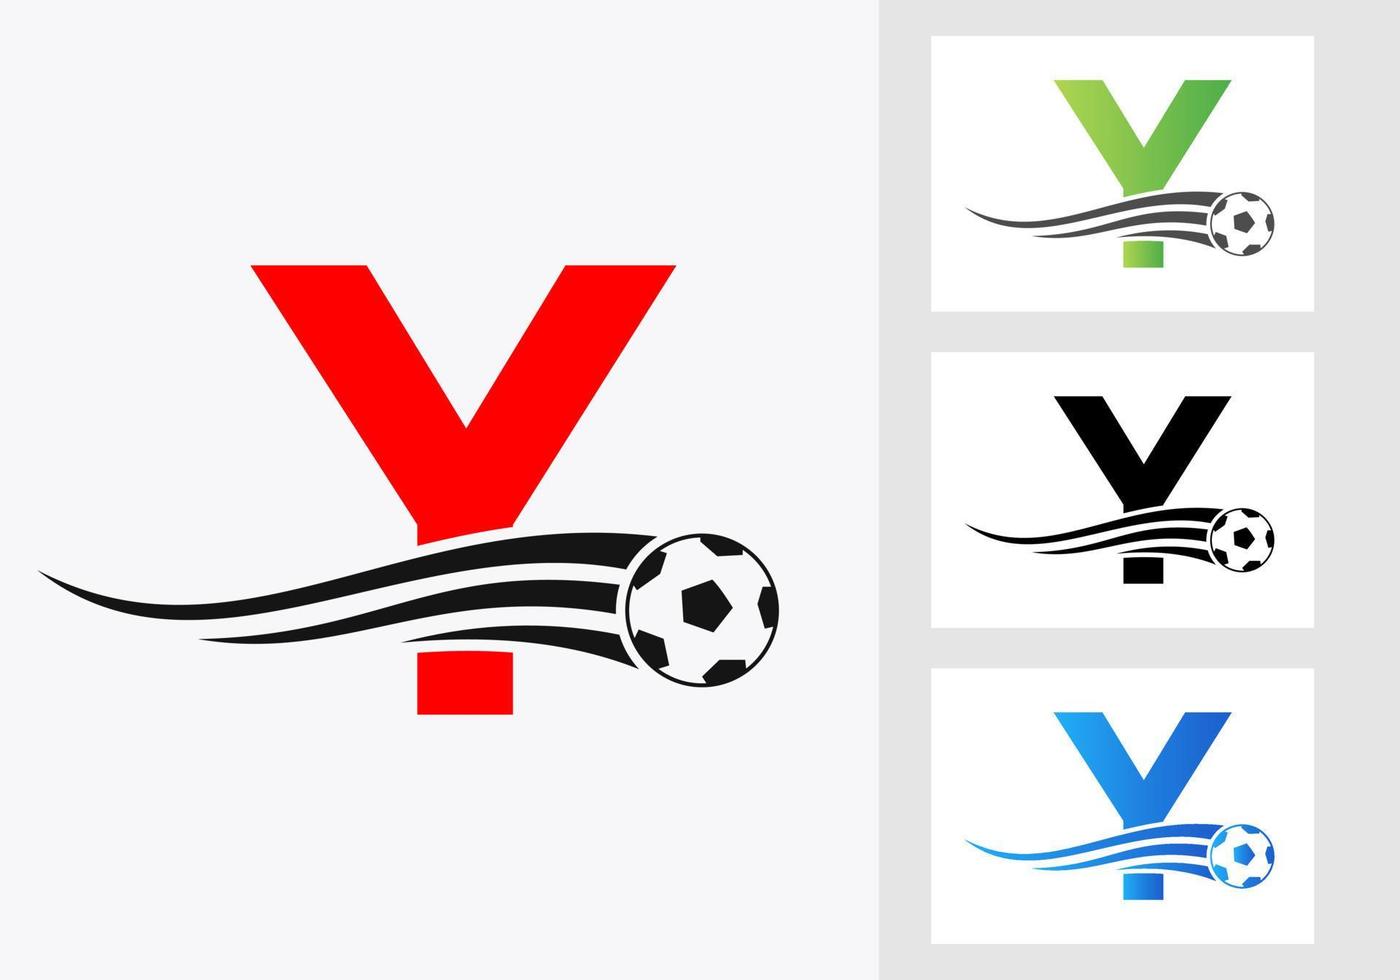 voetbal Amerikaans voetbal logo Aan brief y teken. voetbal club embleem concept van Amerikaans voetbal team icoon vector